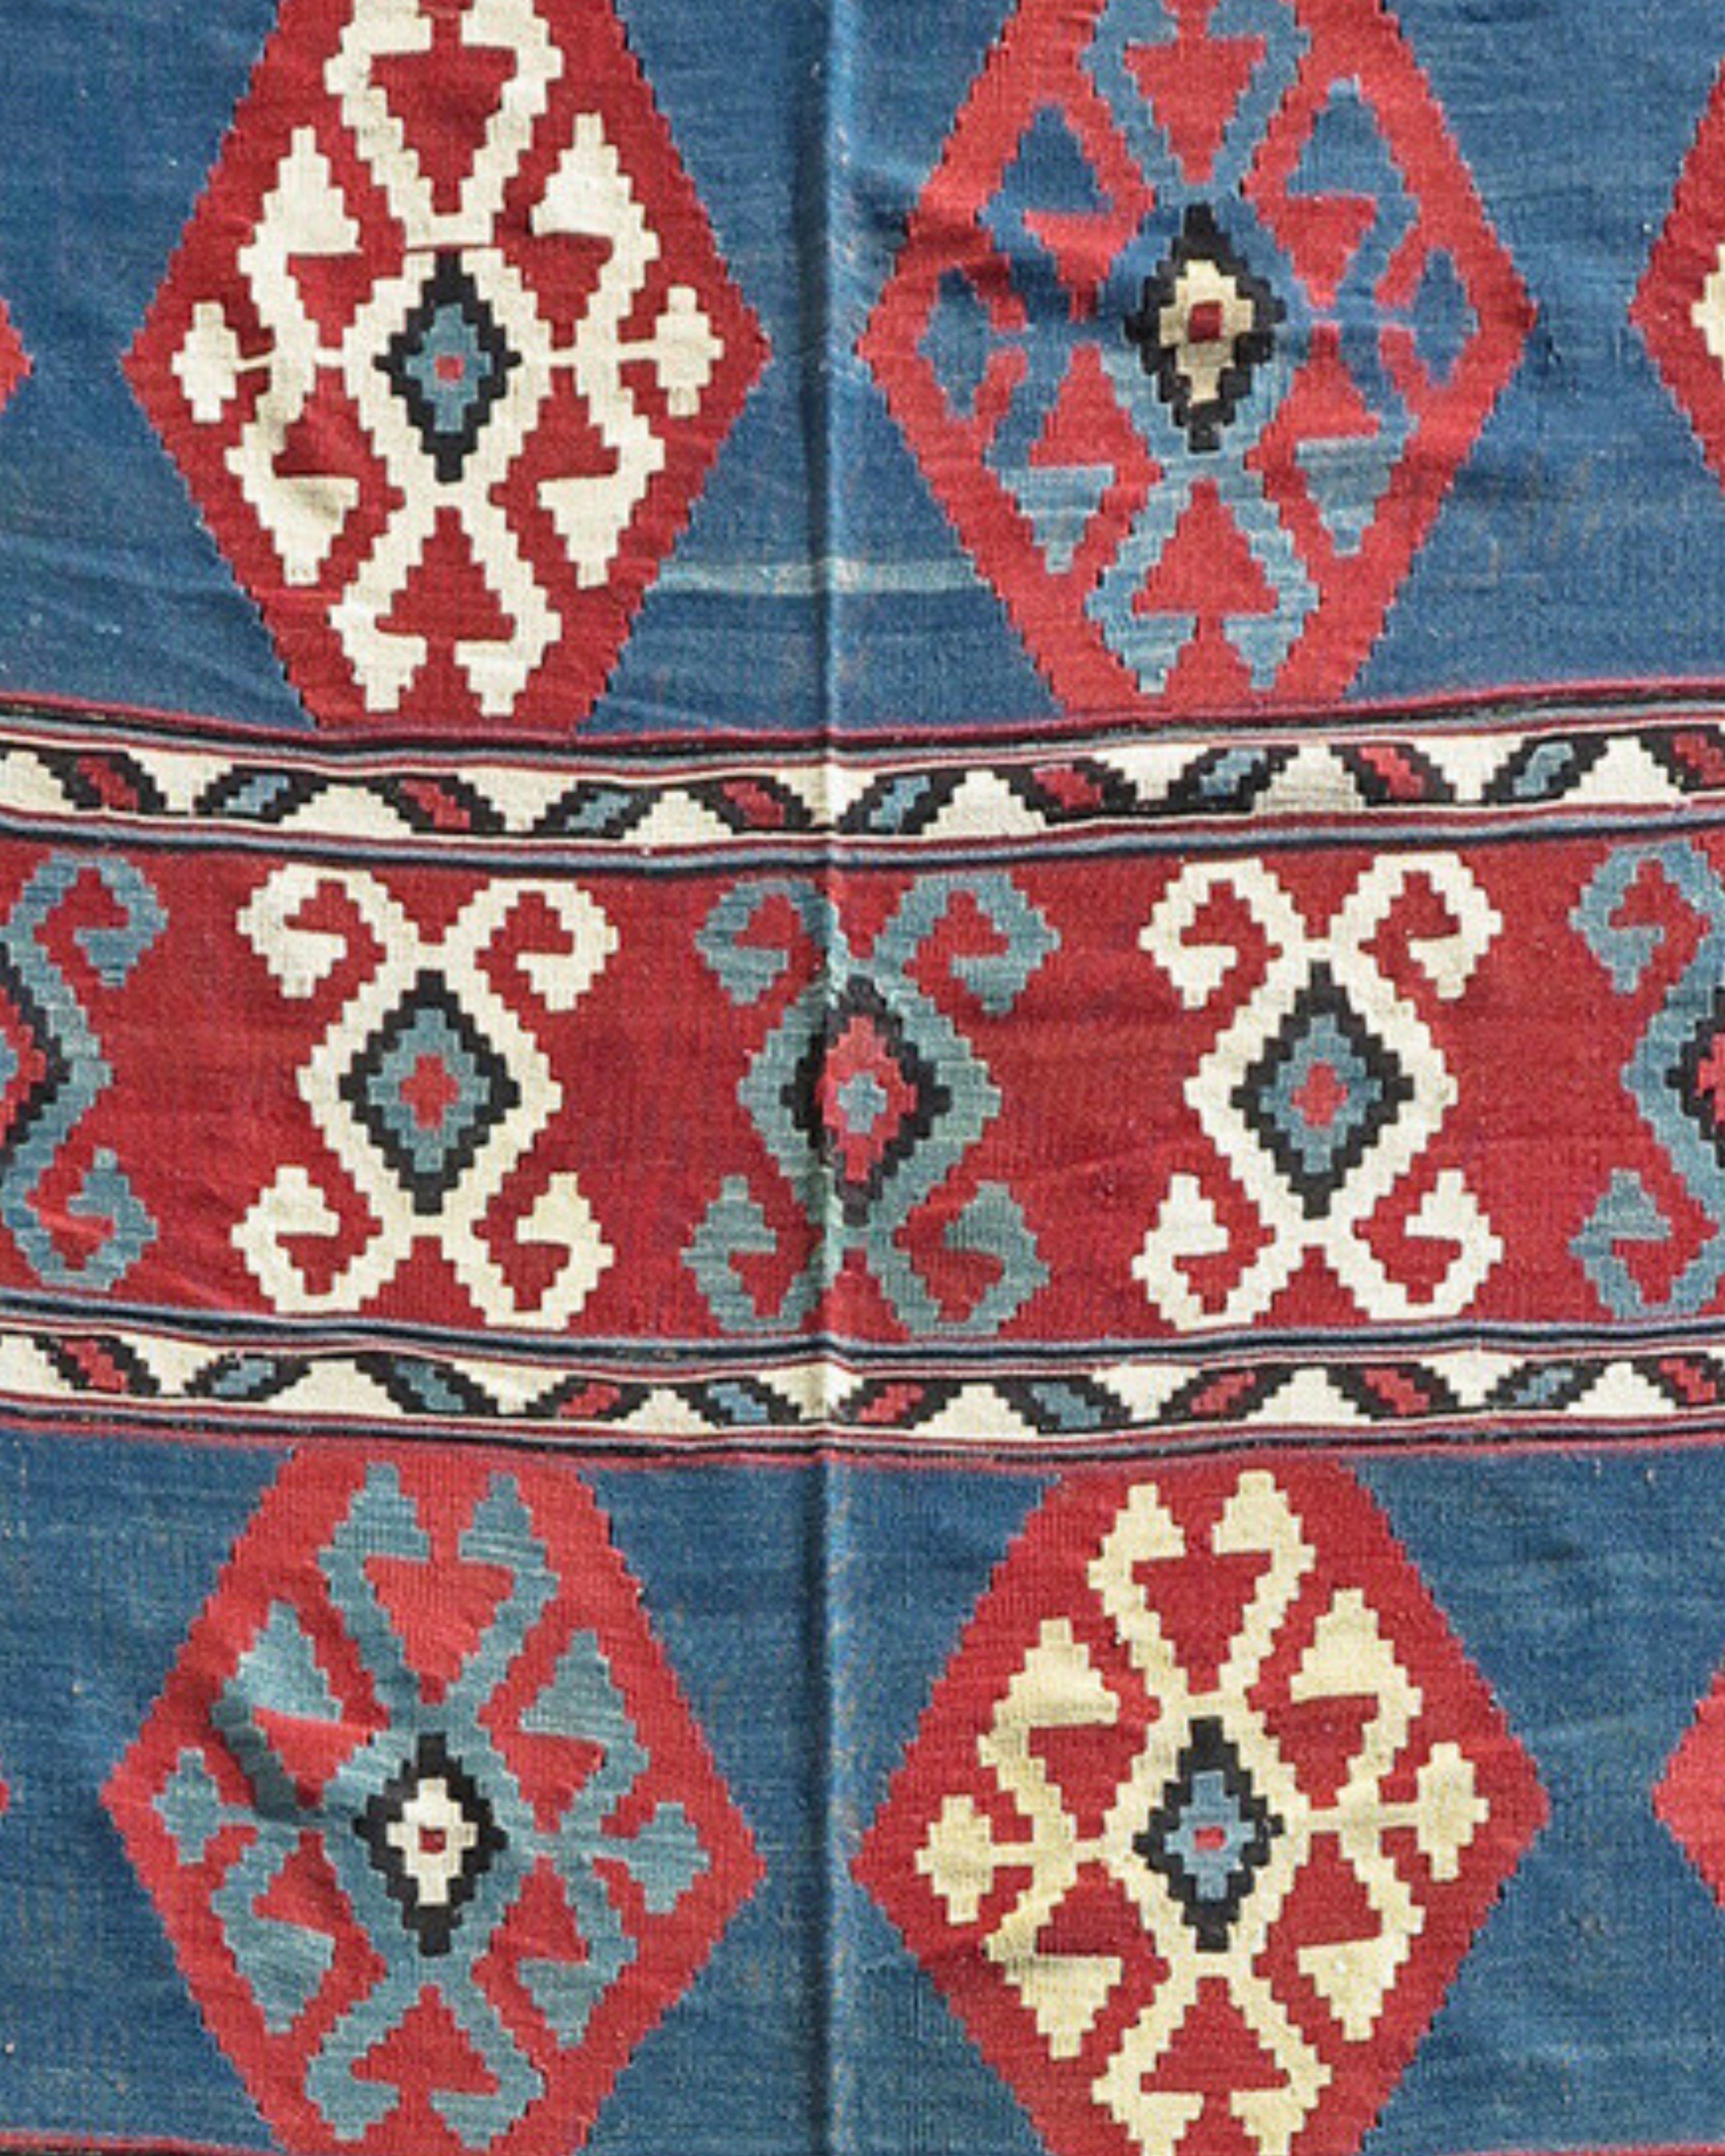 Rug & Kilim caucasien ancien, fin du 19e siècle

Combinant une géométrie audacieuse et des couleurs pures, ce kilim kazak du Caucase du Sud dessine des bandes alternées de bleu et de rouge. Ces bandes sont entrecoupées de fines bandes blanches avec